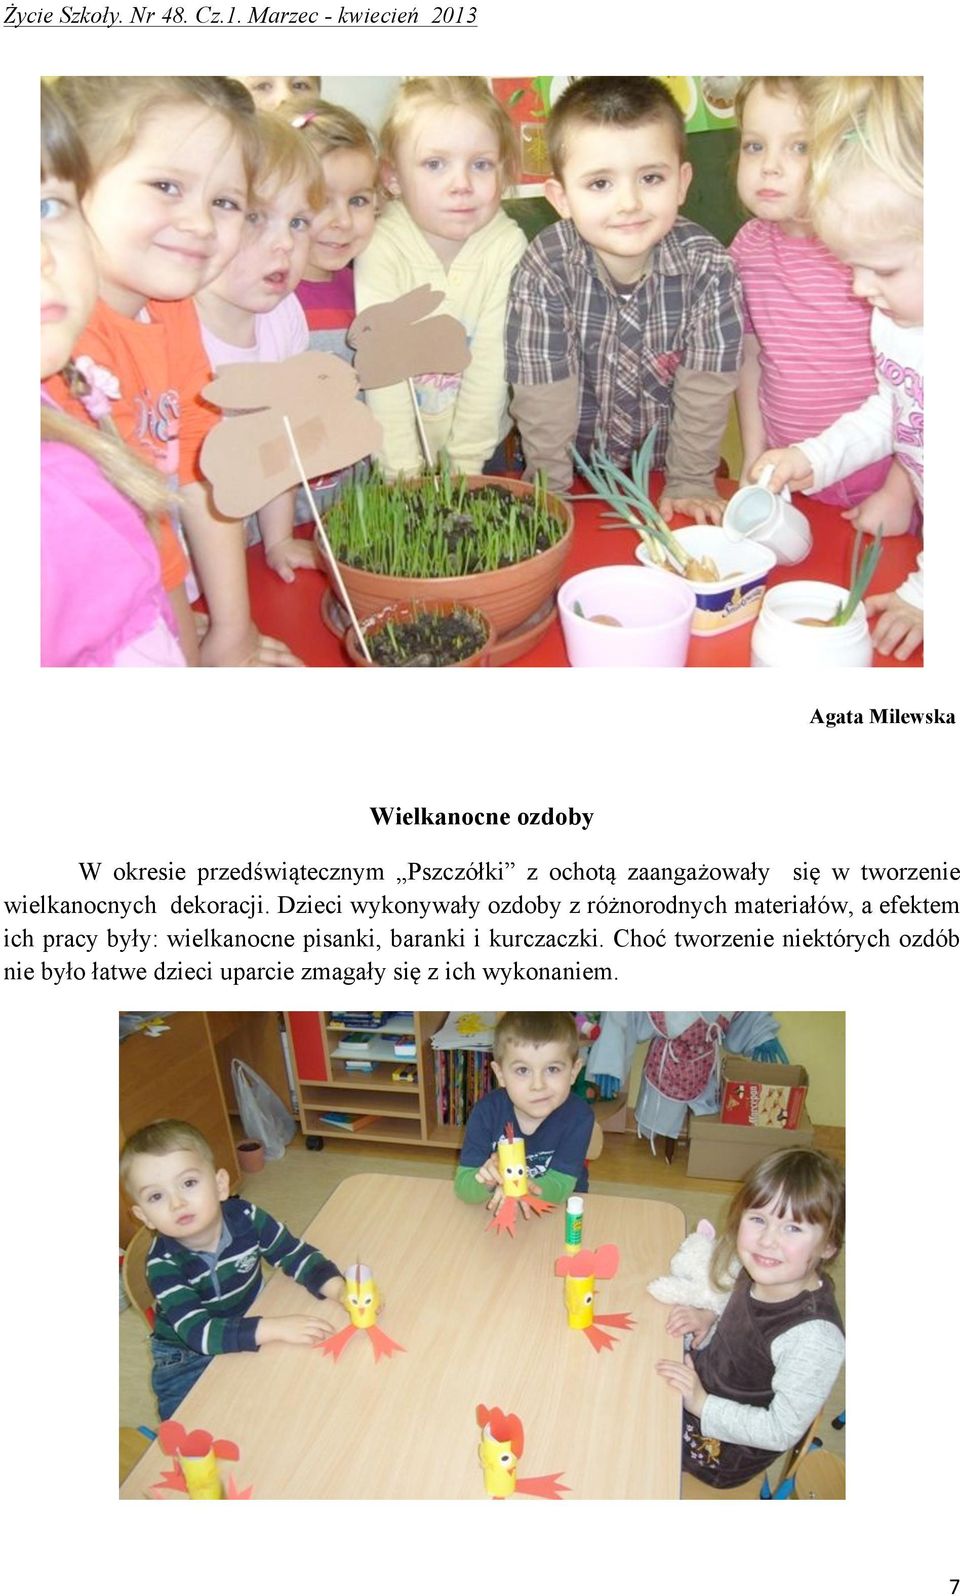 Dzieci wykonywały ozdoby z różnorodnych materiałów, a efektem ich pracy były: